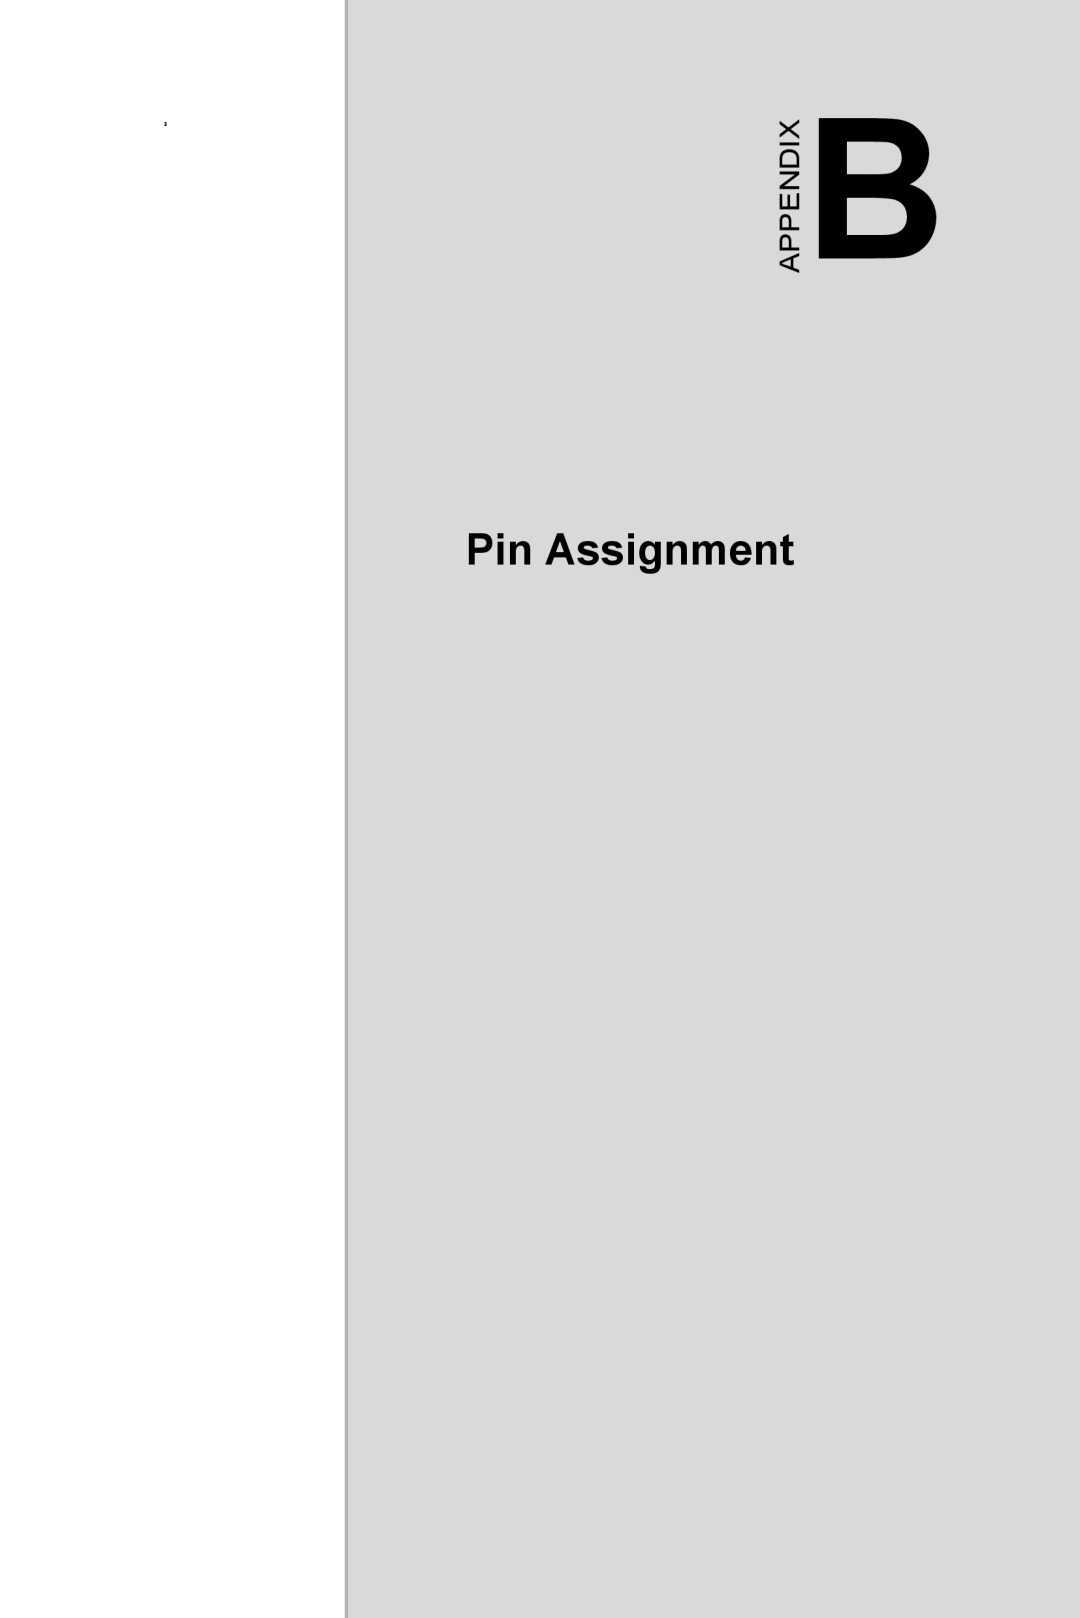 Intel 3U Compact PCI, MIC-3321 user manual Pin Assignment, Appendix 